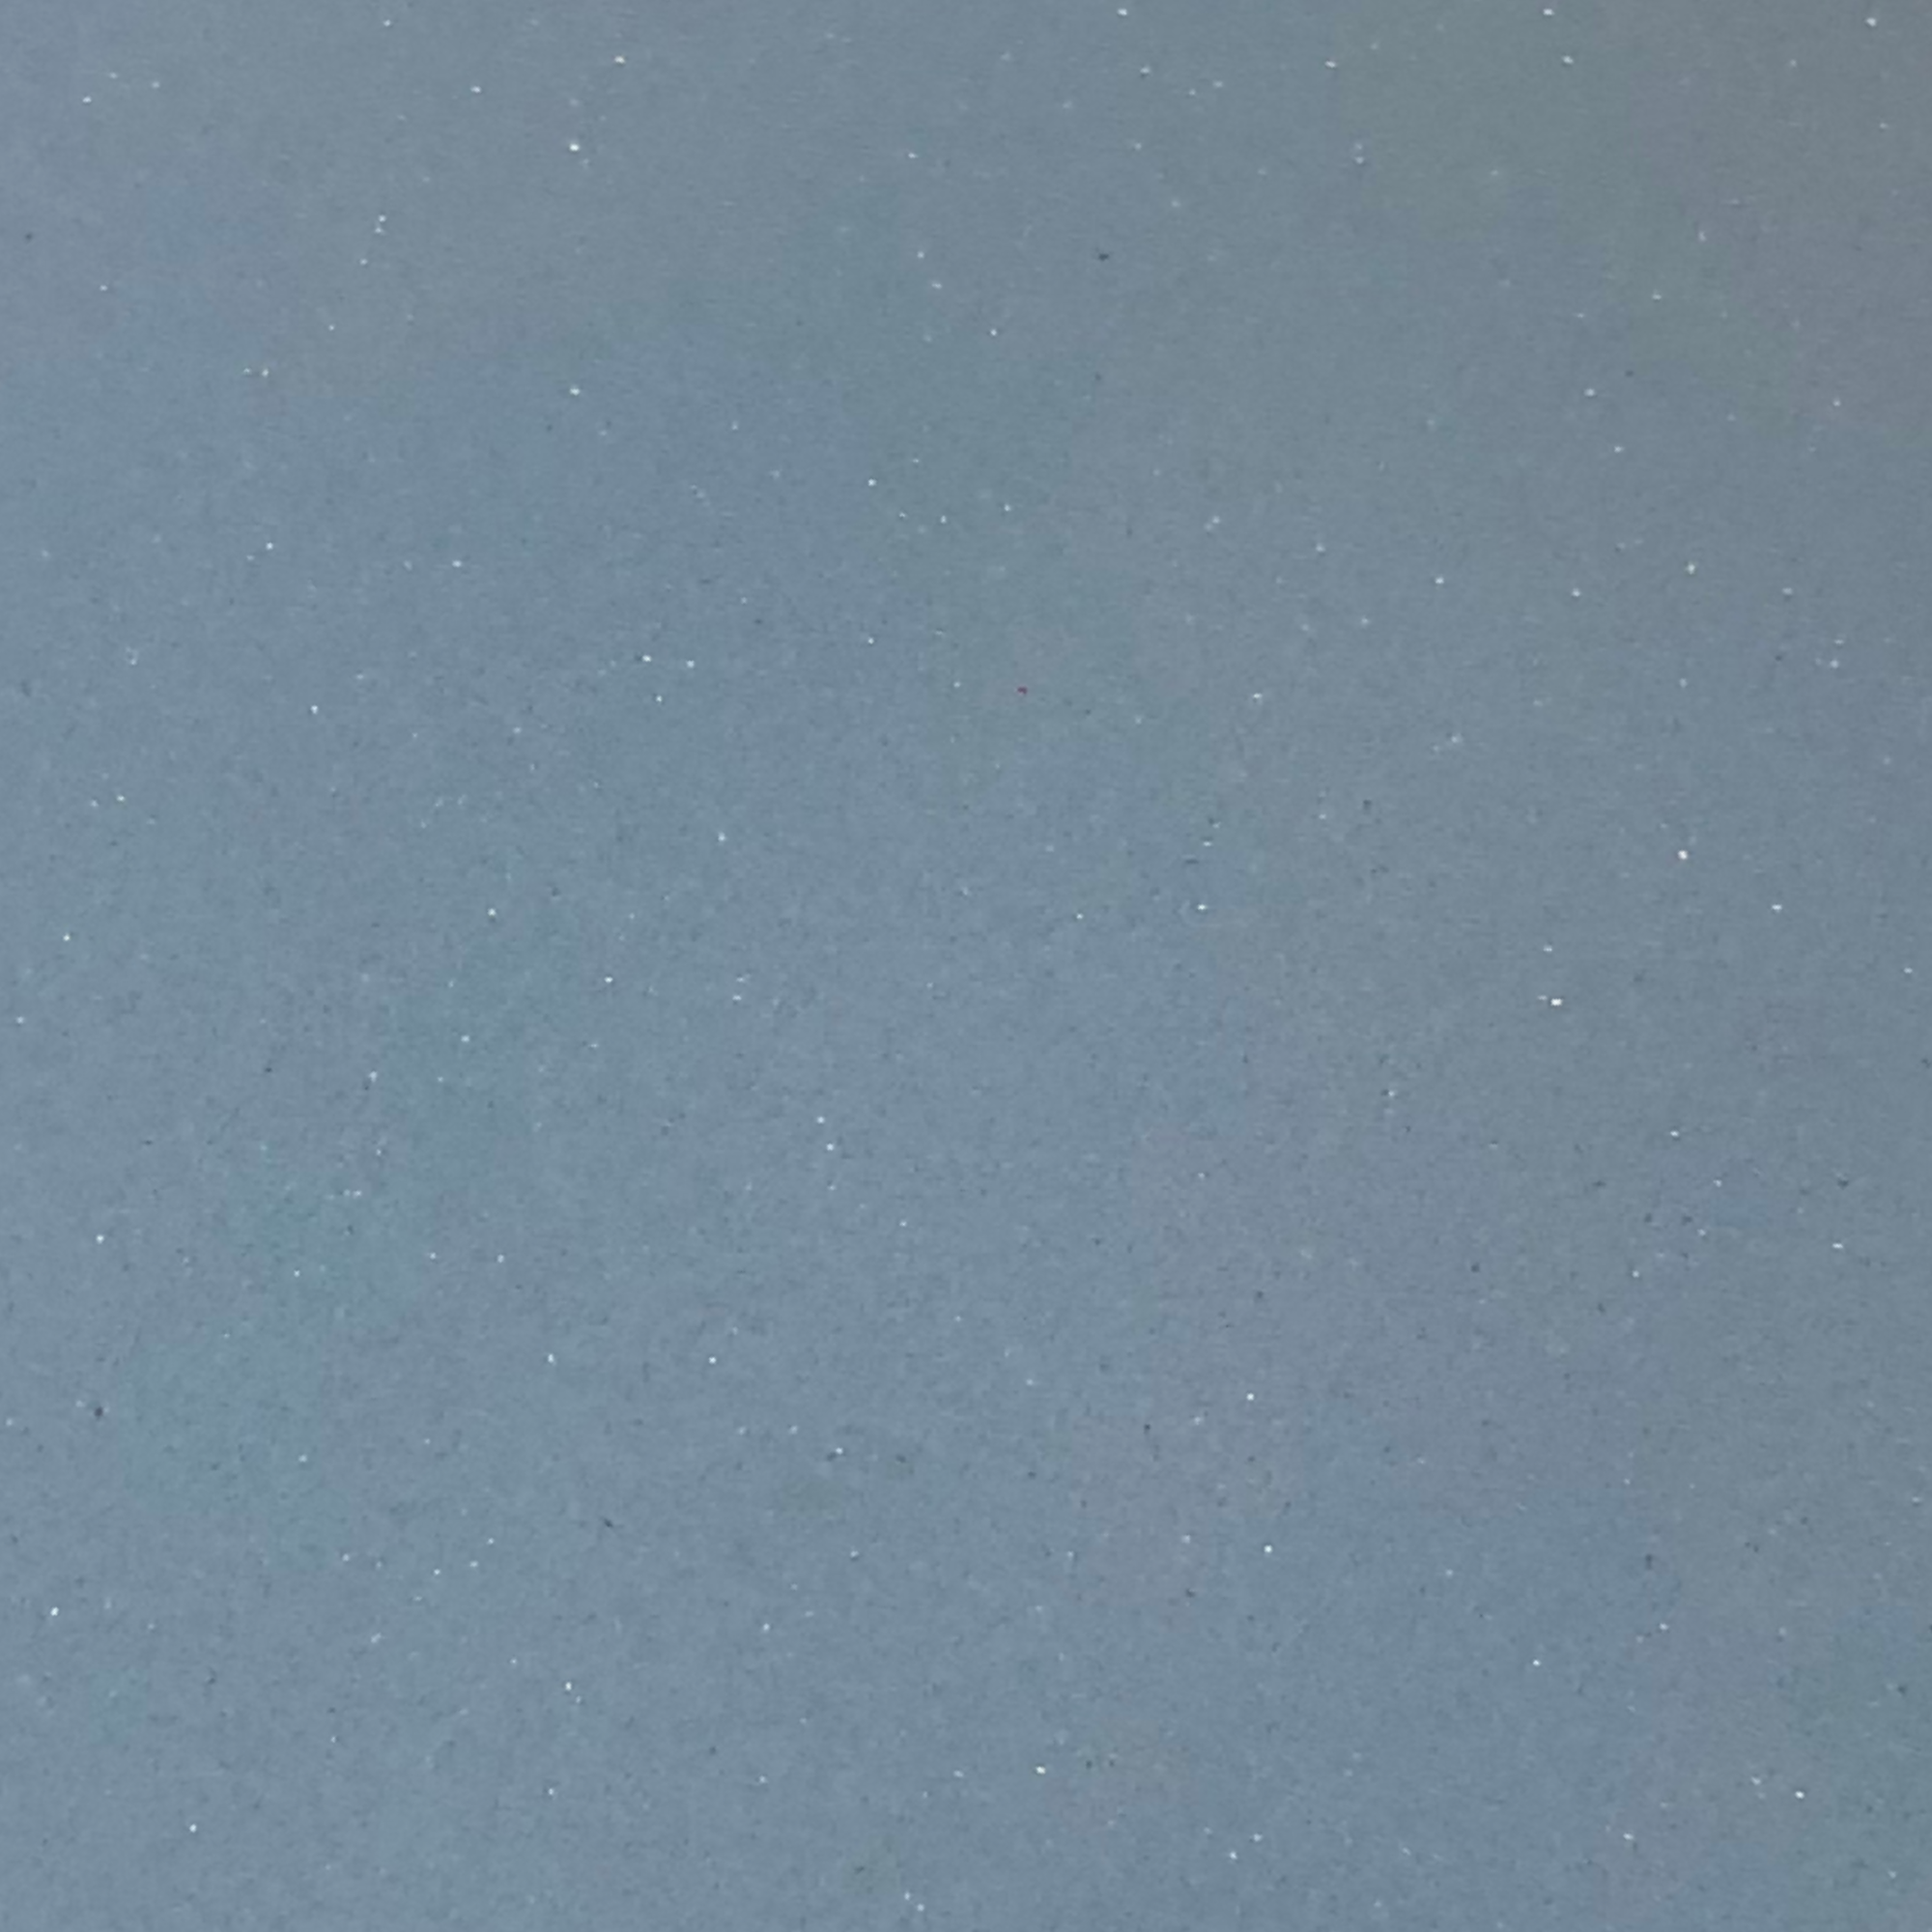 Poron Medical Bleu - Shore 10 - 2 mm / 3 mm